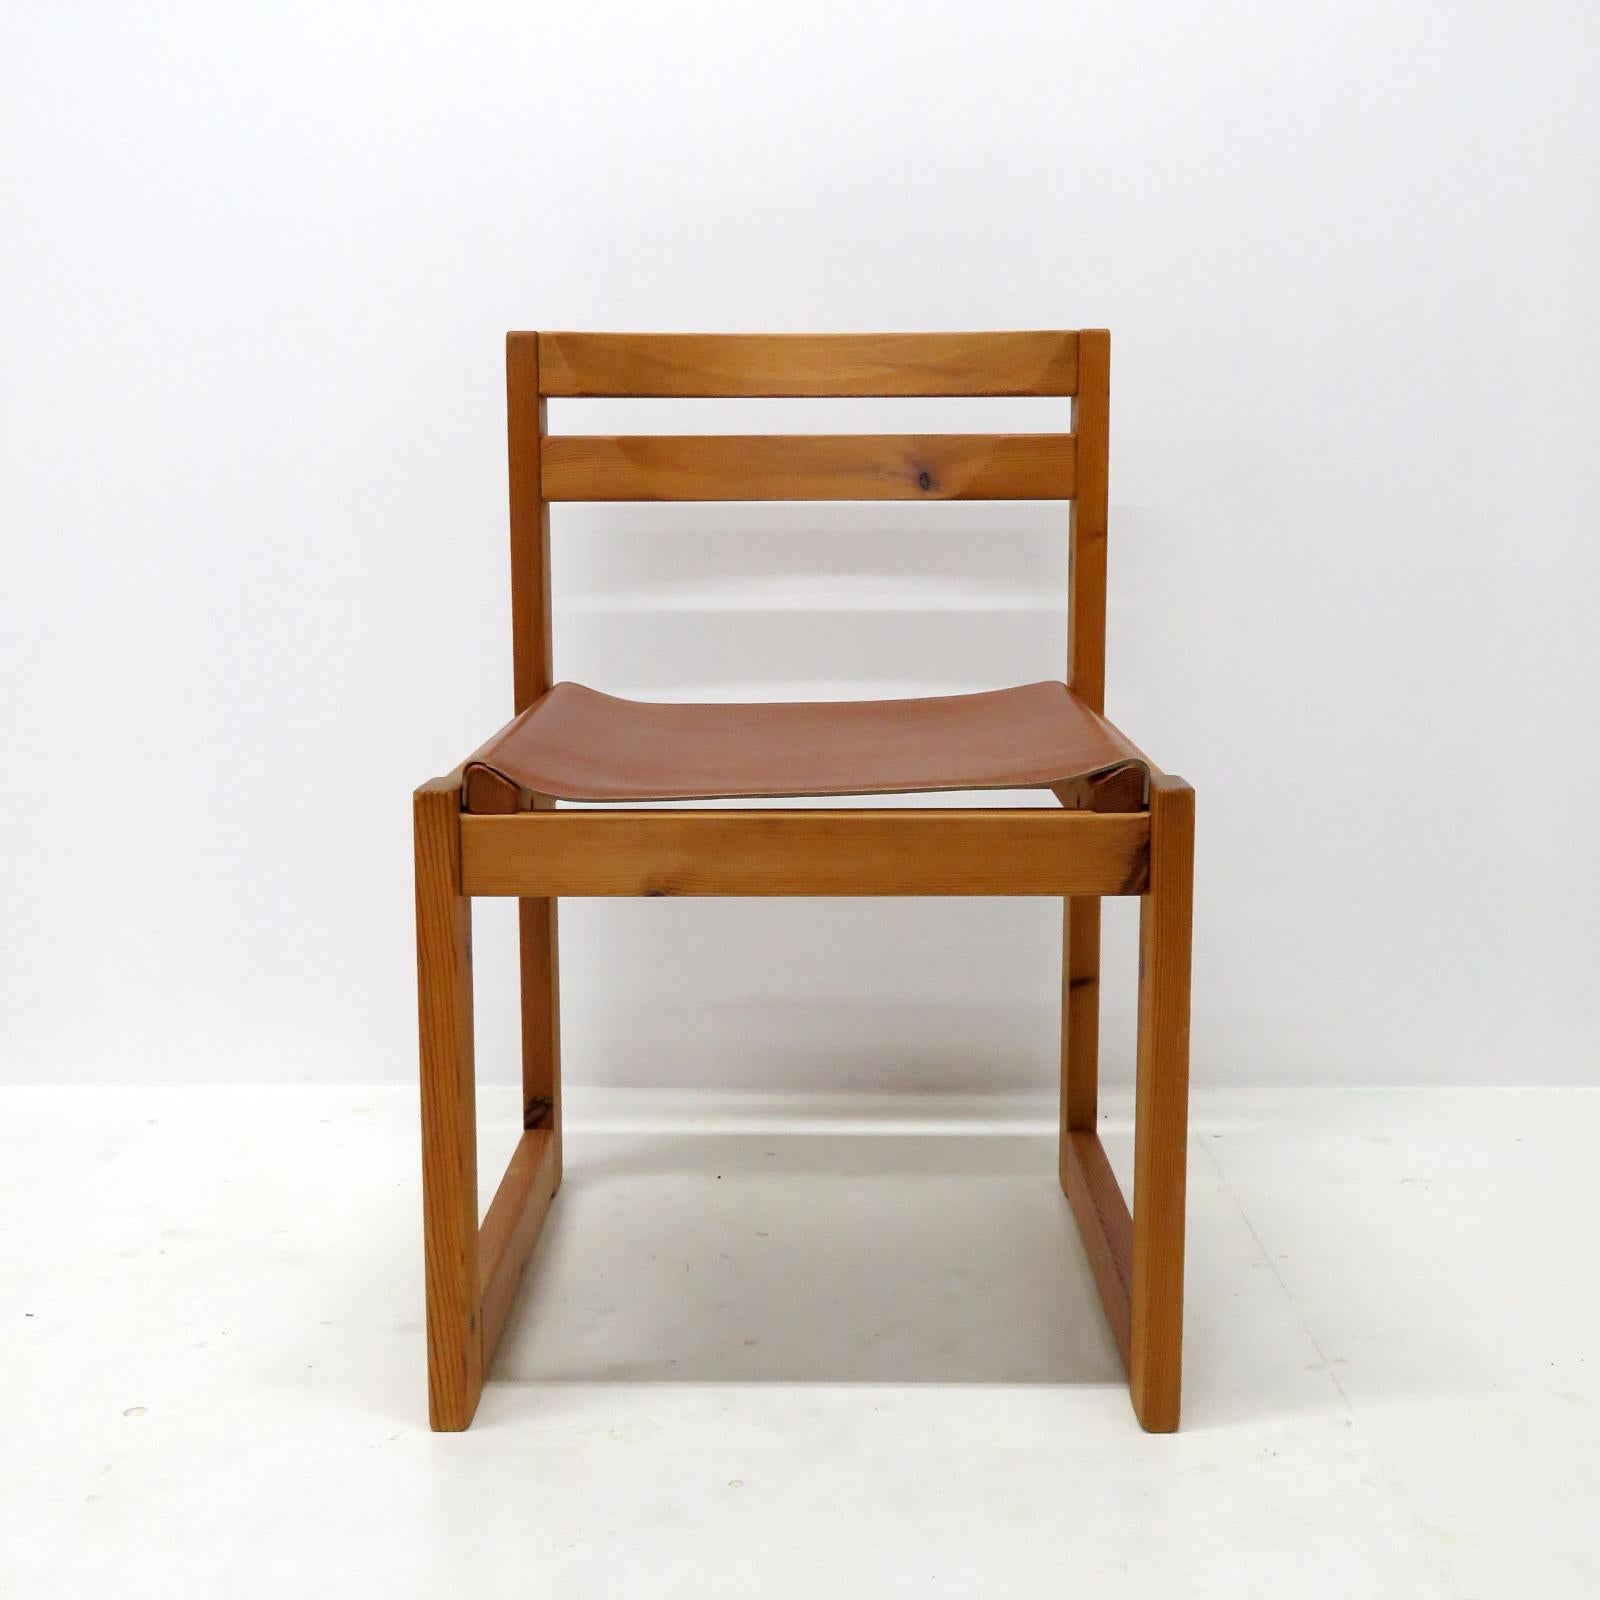 Wunderschöner Esszimmerstuhl, entworfen von Knud Færch für Sorø Stolefabrik, 1970, mit Gestell aus Kiefer und dickem Ledersitz. Vier Stühle verfügbar, Preis individuell.